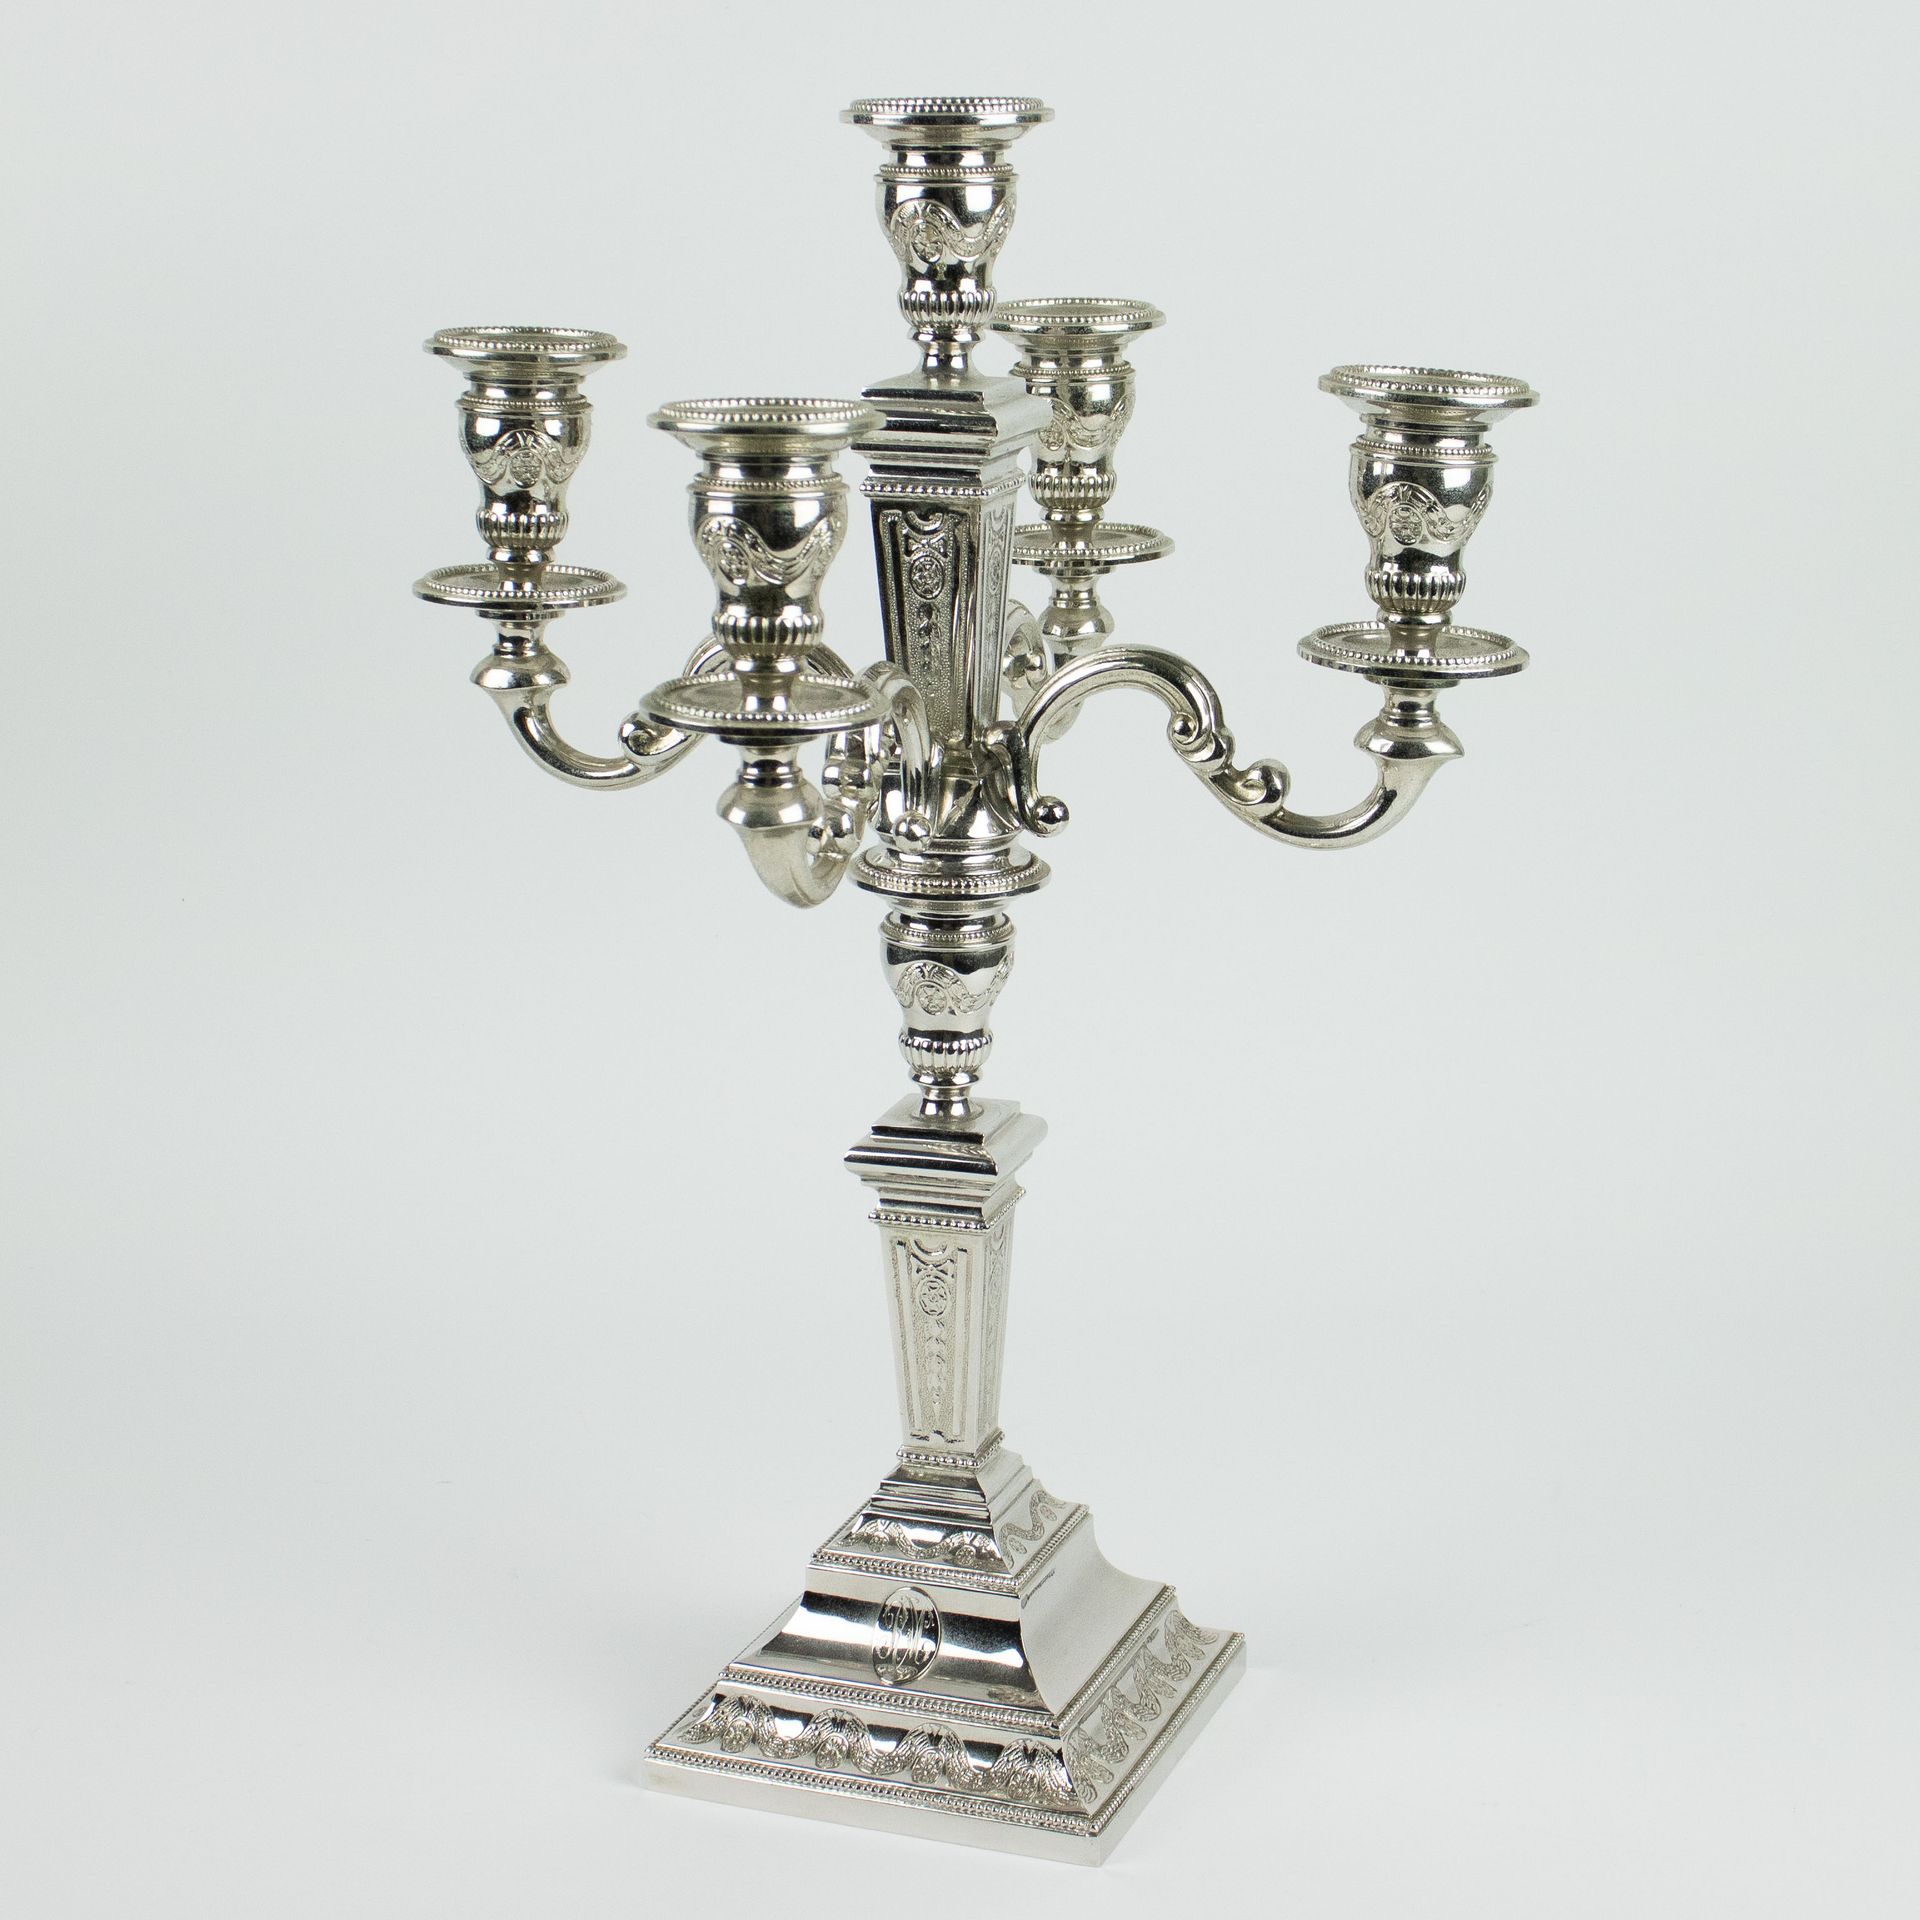 Silver candlestick with 5 arms Une télécommande à 5 bras.
H 41,5 cm